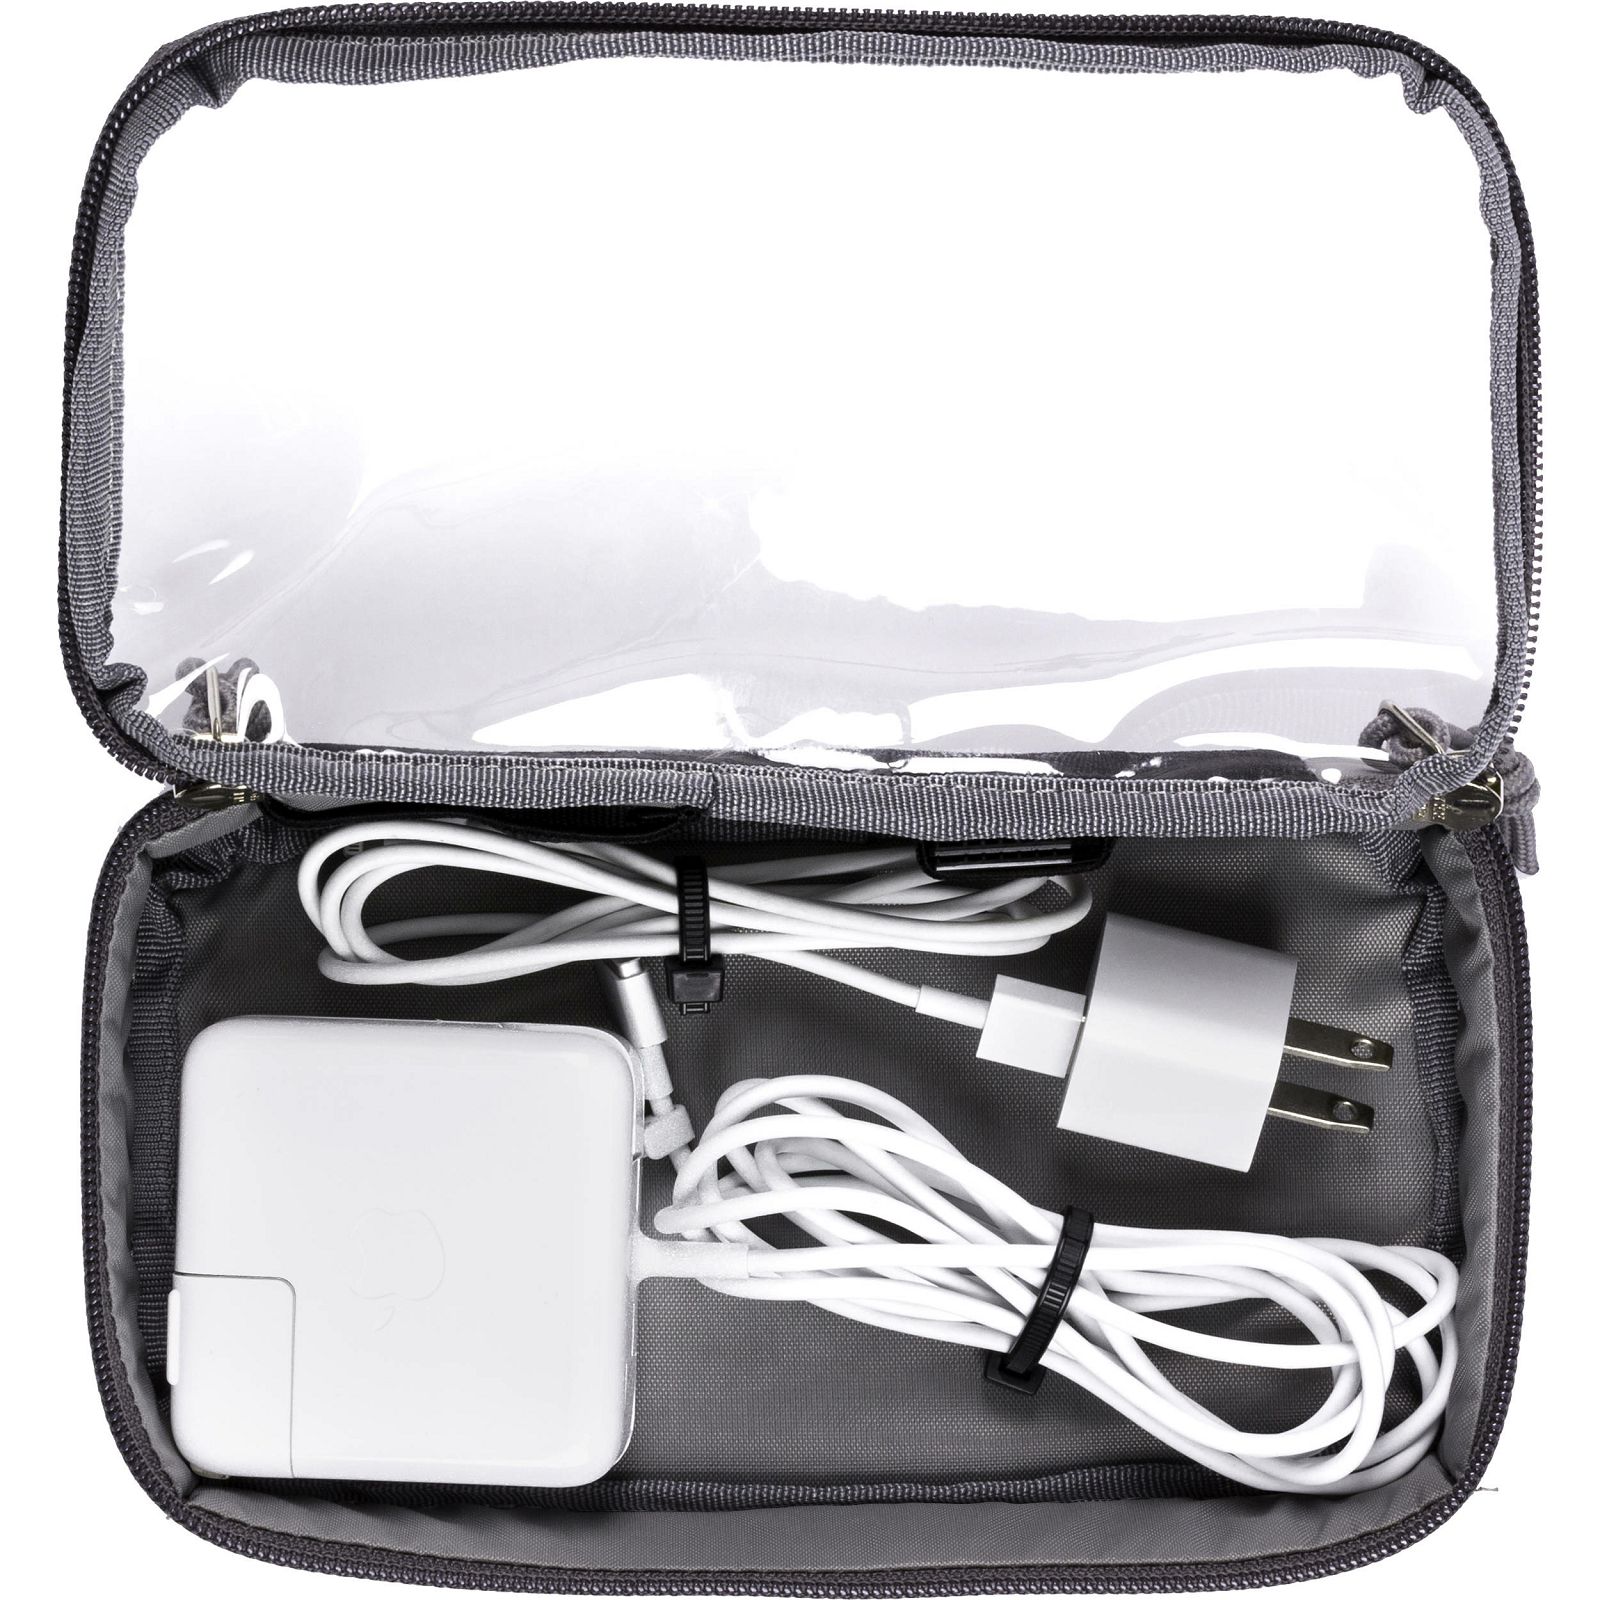 Tamrac Nagano 1.3L Case steel gray dodatna torbica za foto ruksak (T1550-1519)